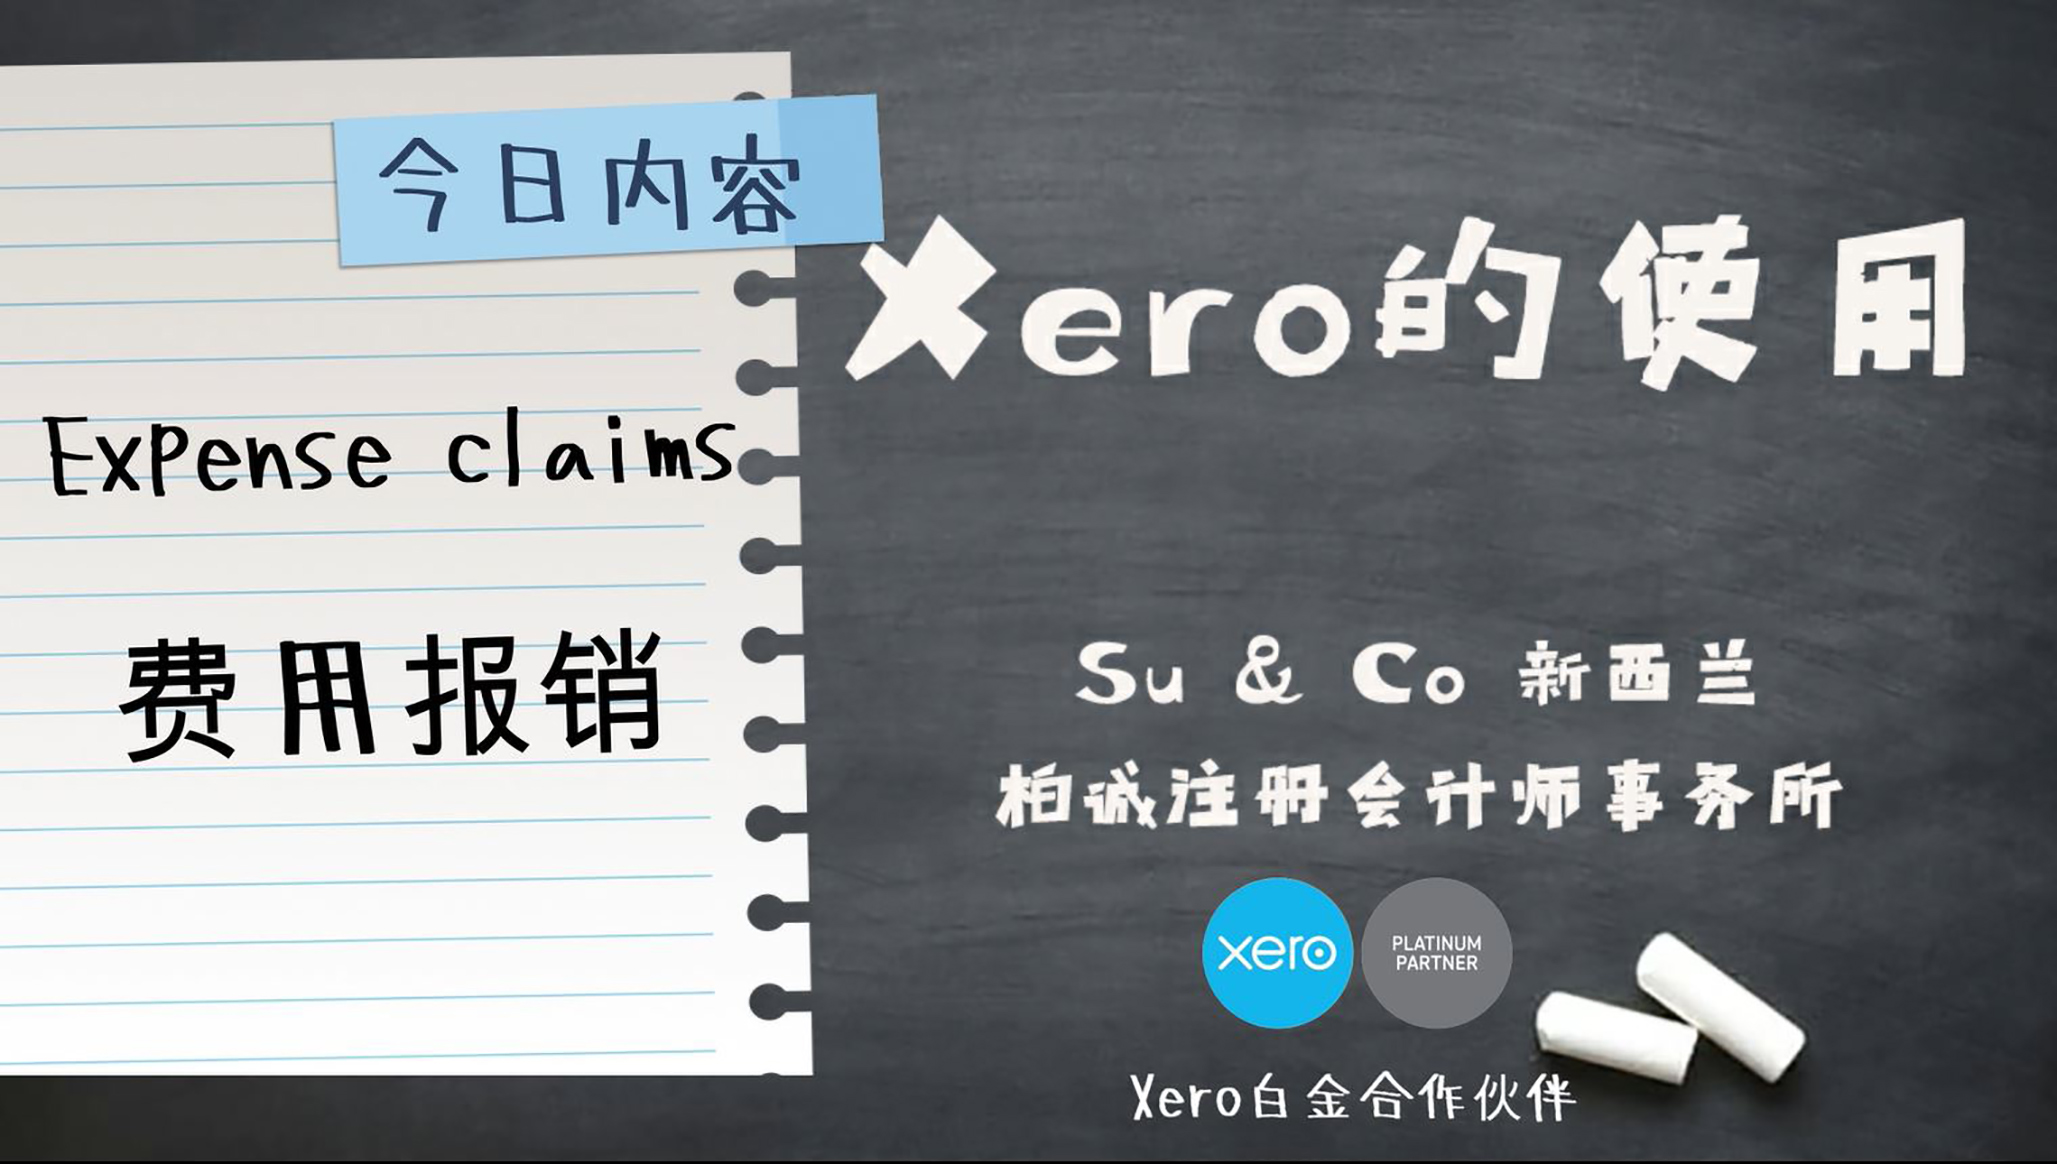 Xero的使用教程 - Expense claims 费用报销功能